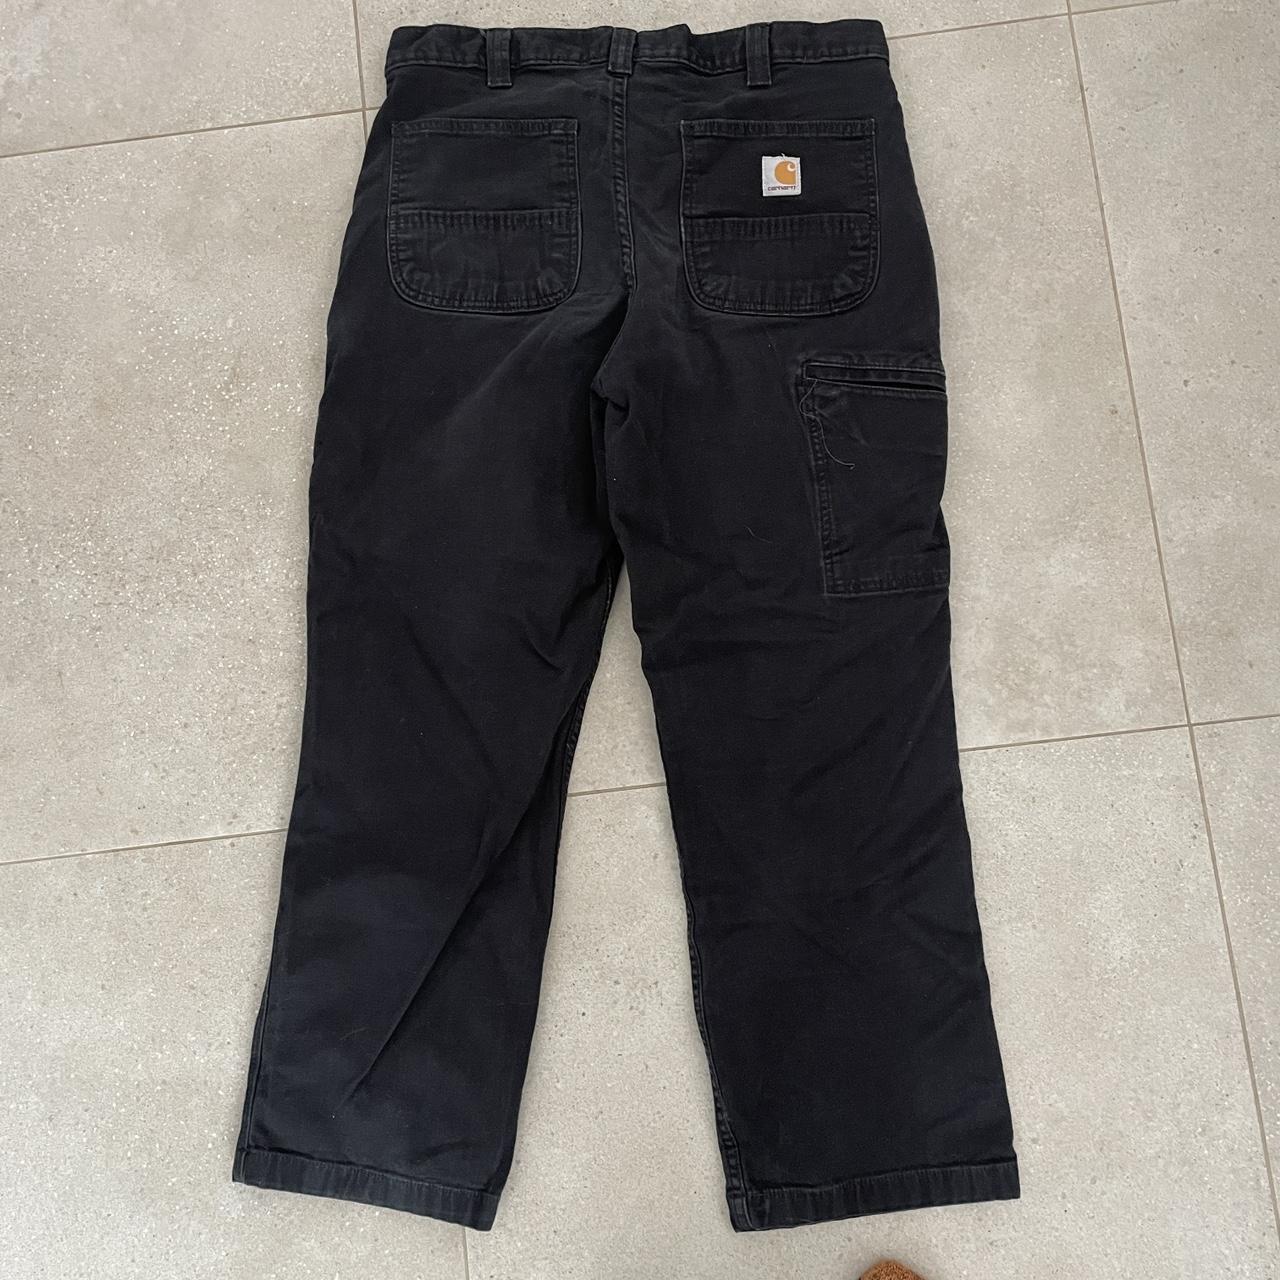 Black Carhartt Pants Men’s size W33” By L27” Great... - Depop